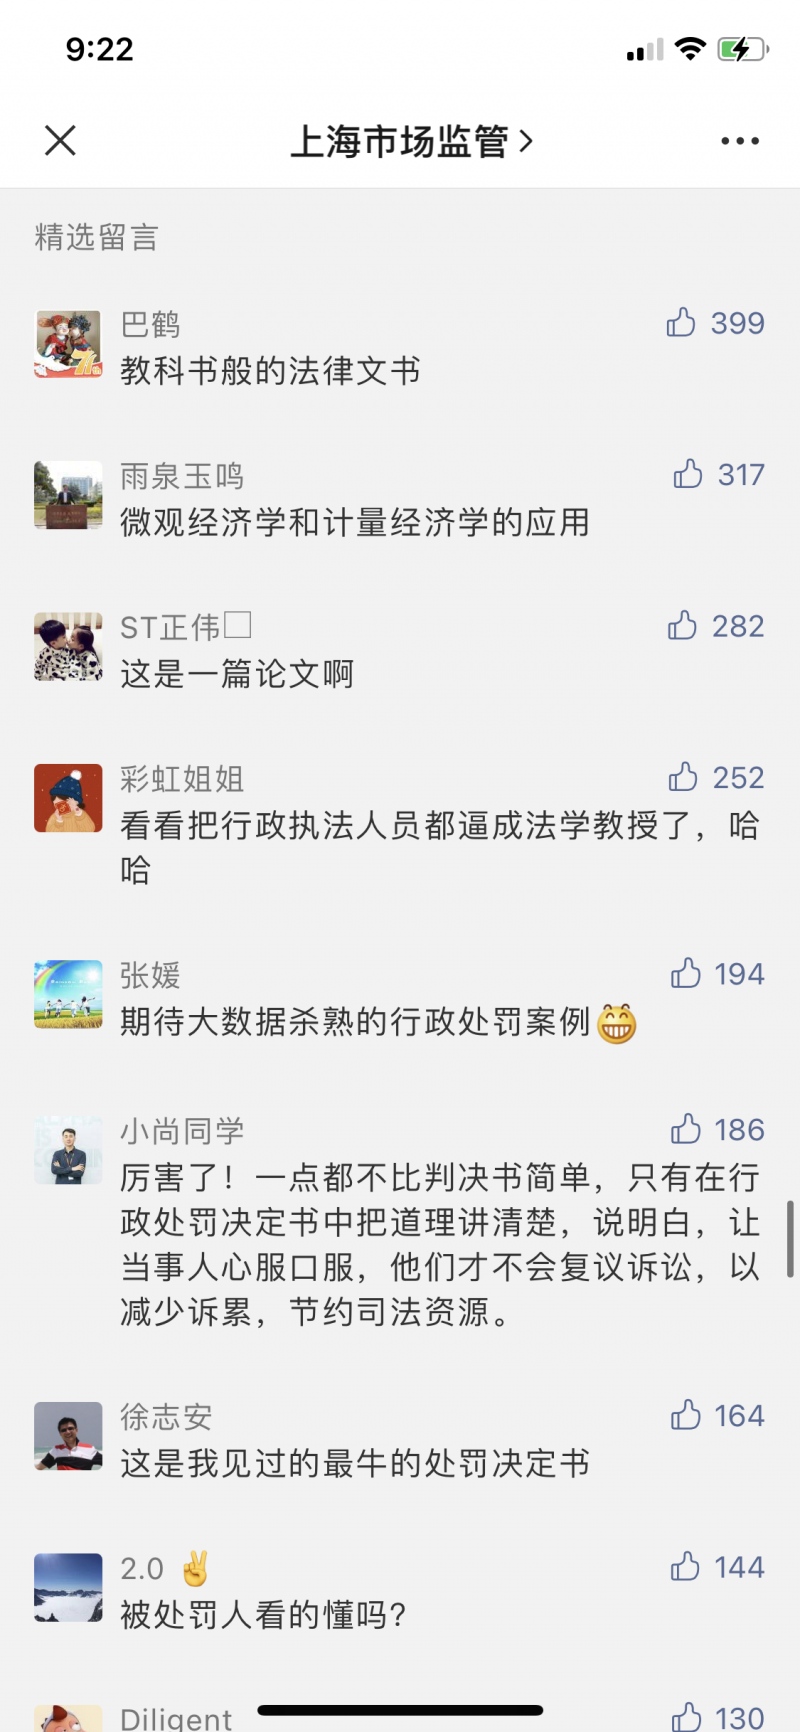 上海对食派士的反垄断行政处罚书火了为什么说是教科书级别